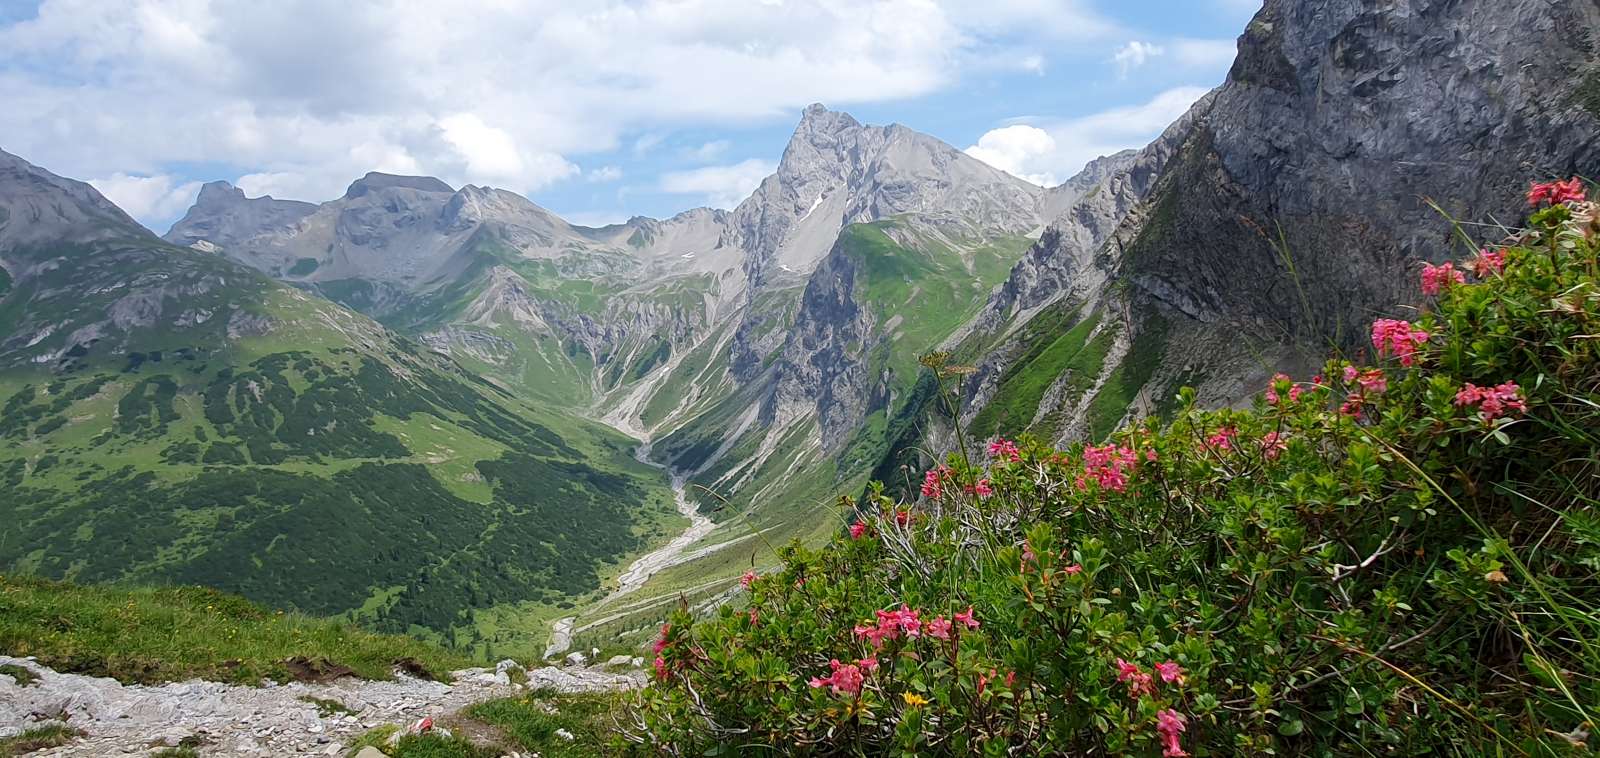 Der Berg ruft! Abenteuer Alpenüberquerung startet